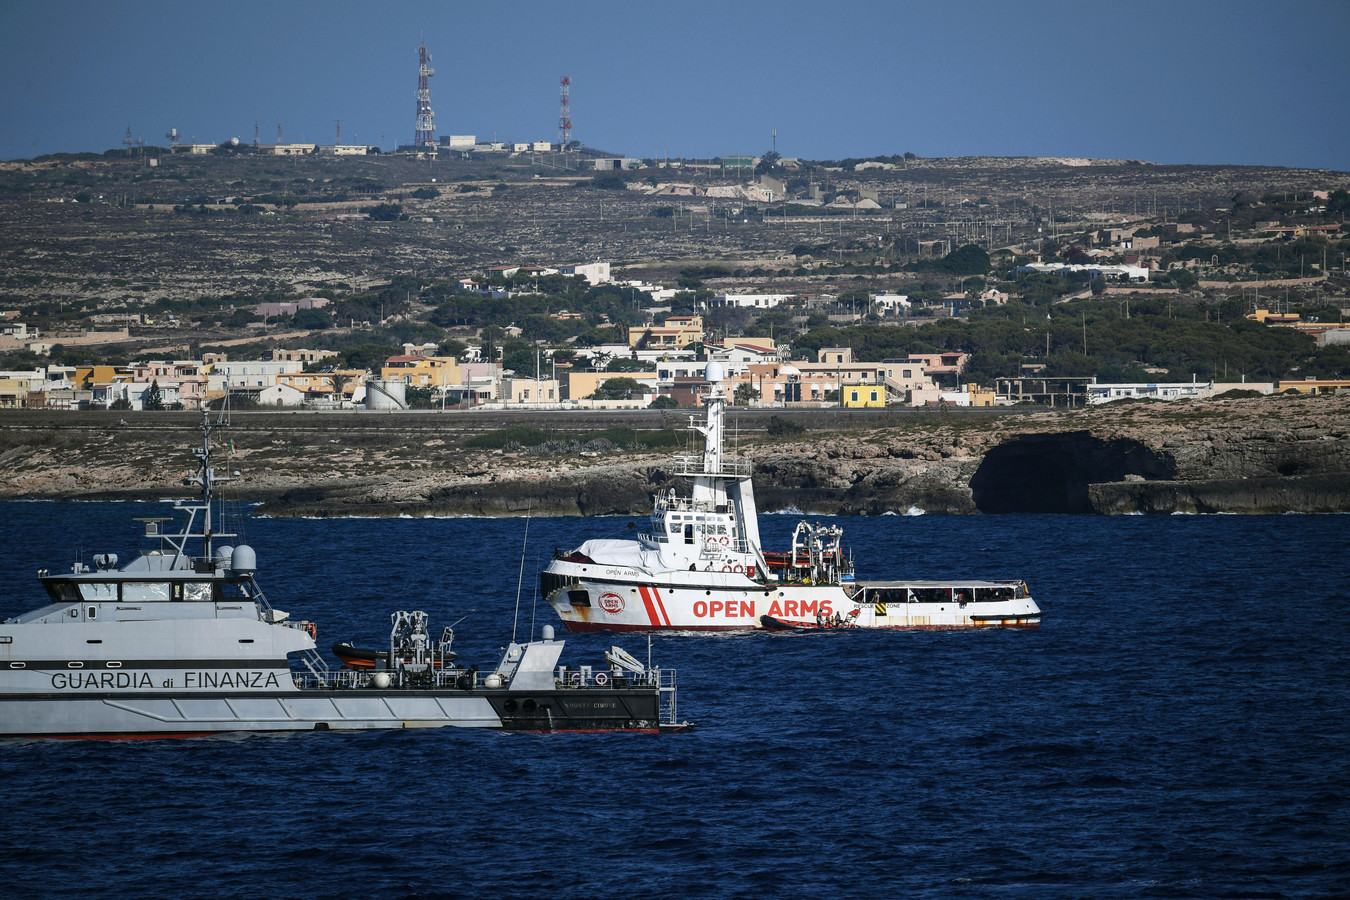 Het schip Open Arms dat Salvini weigerde voor de kust van Lampedusa.